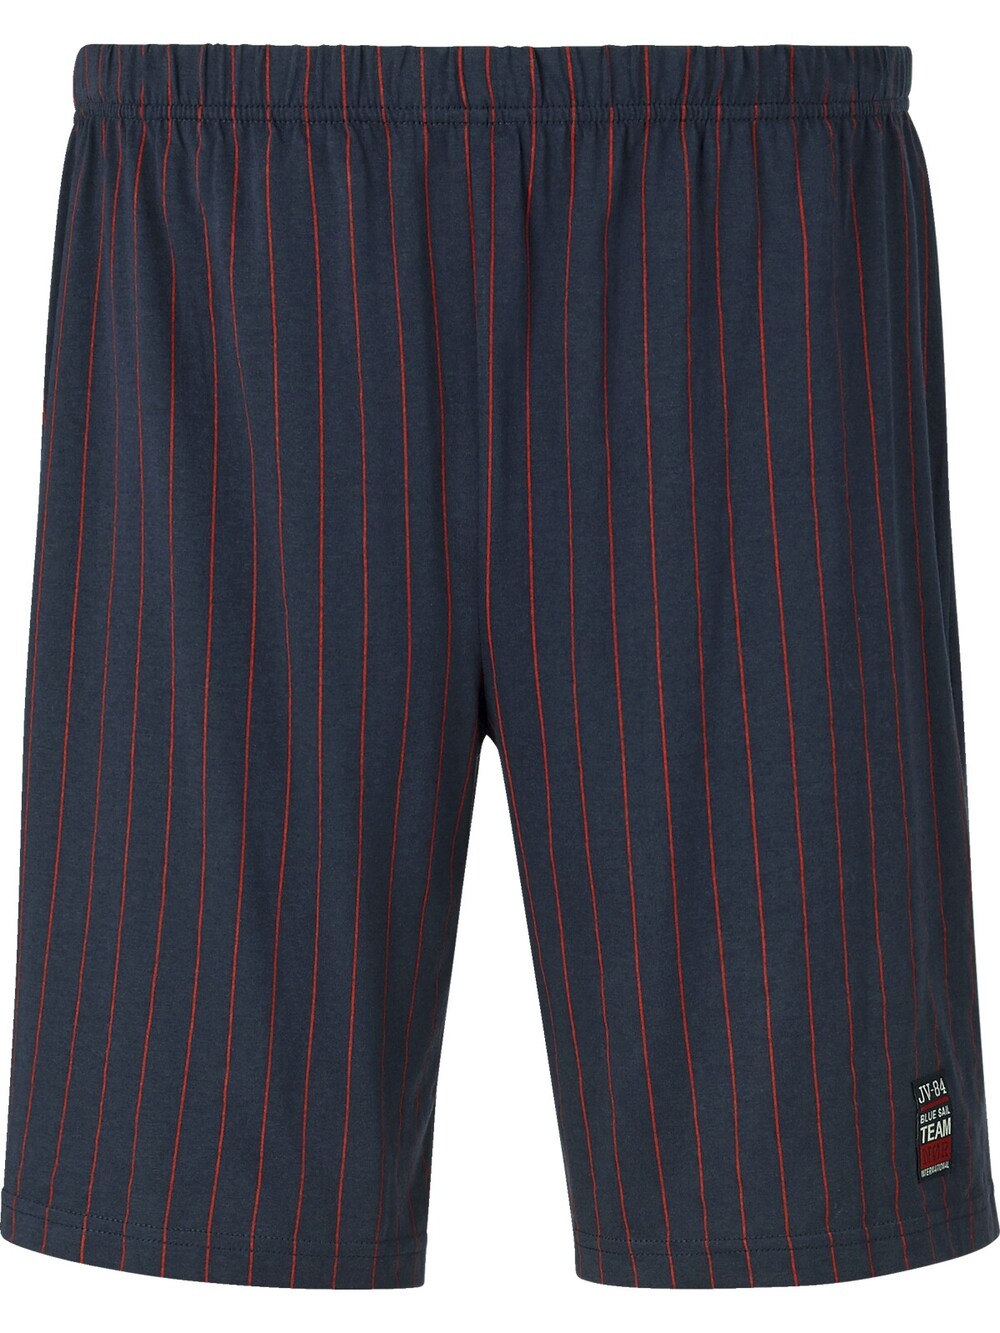 Пижамные штаны Jan Vanderstorm Baro, темно-синий 5pcs bmp390 baro